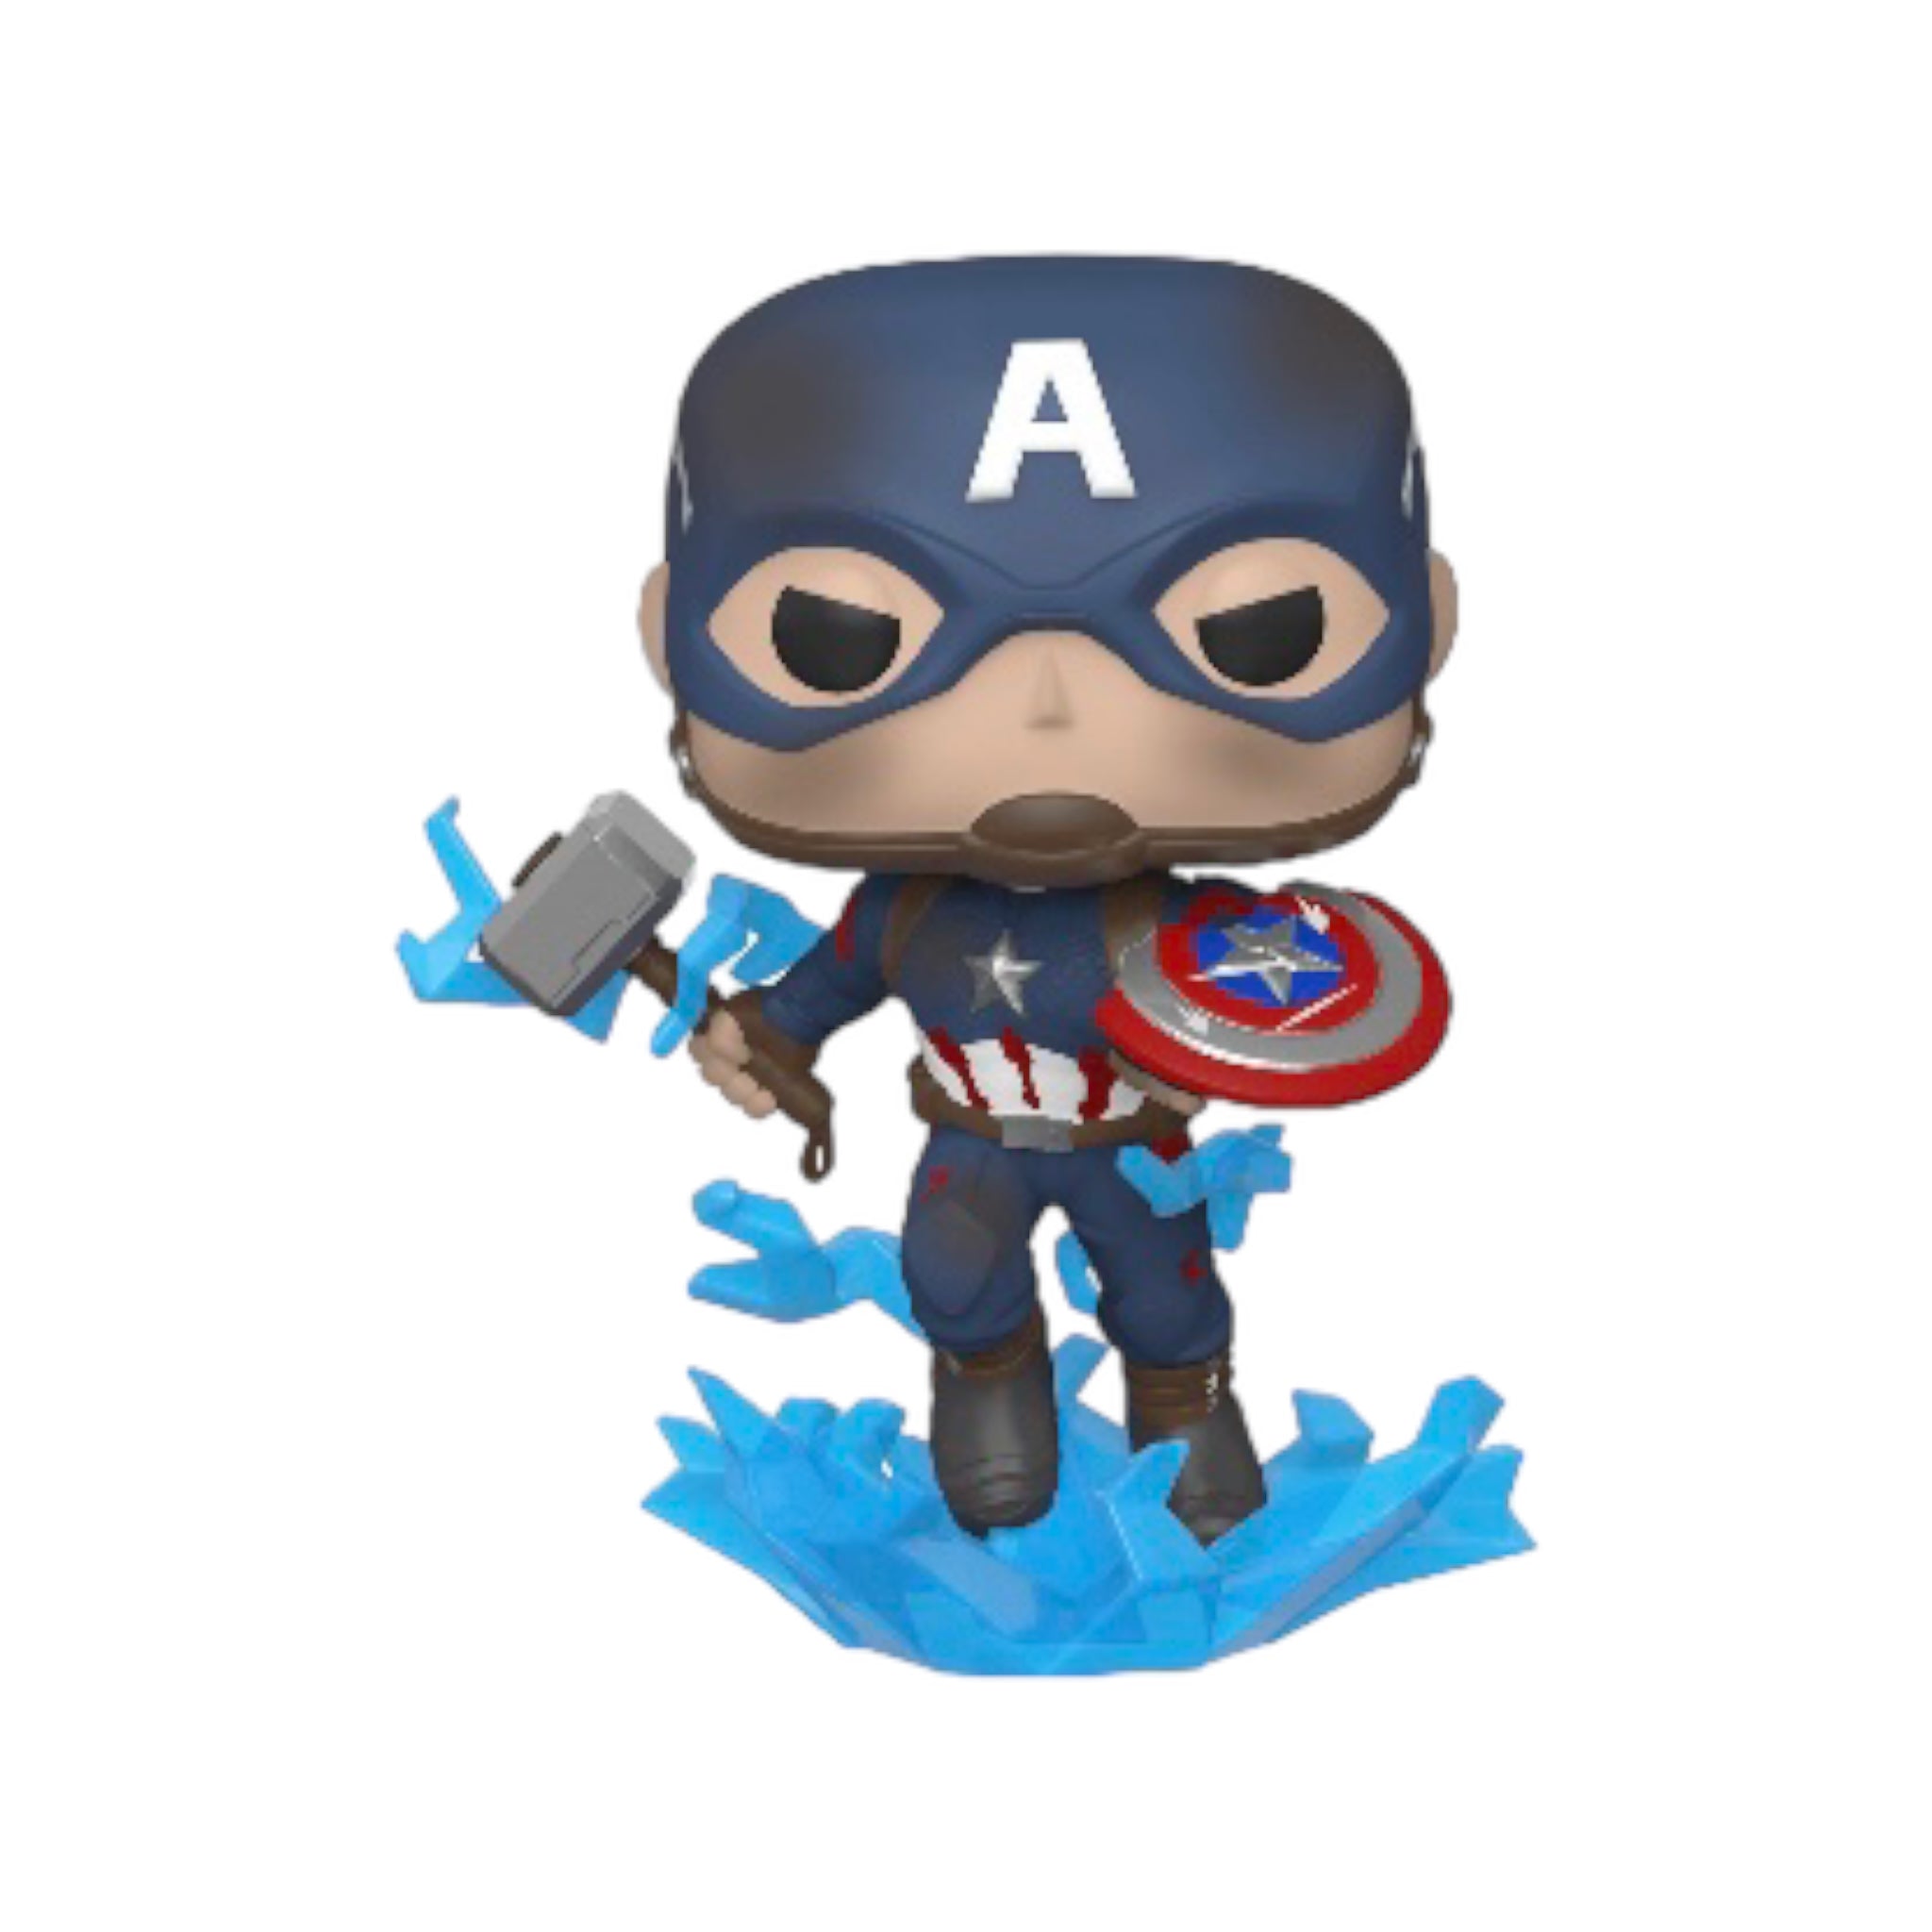 Captain America #573 (w/ Mjolnir & Broken Shield) Funko Pop! - Avengers Endgame